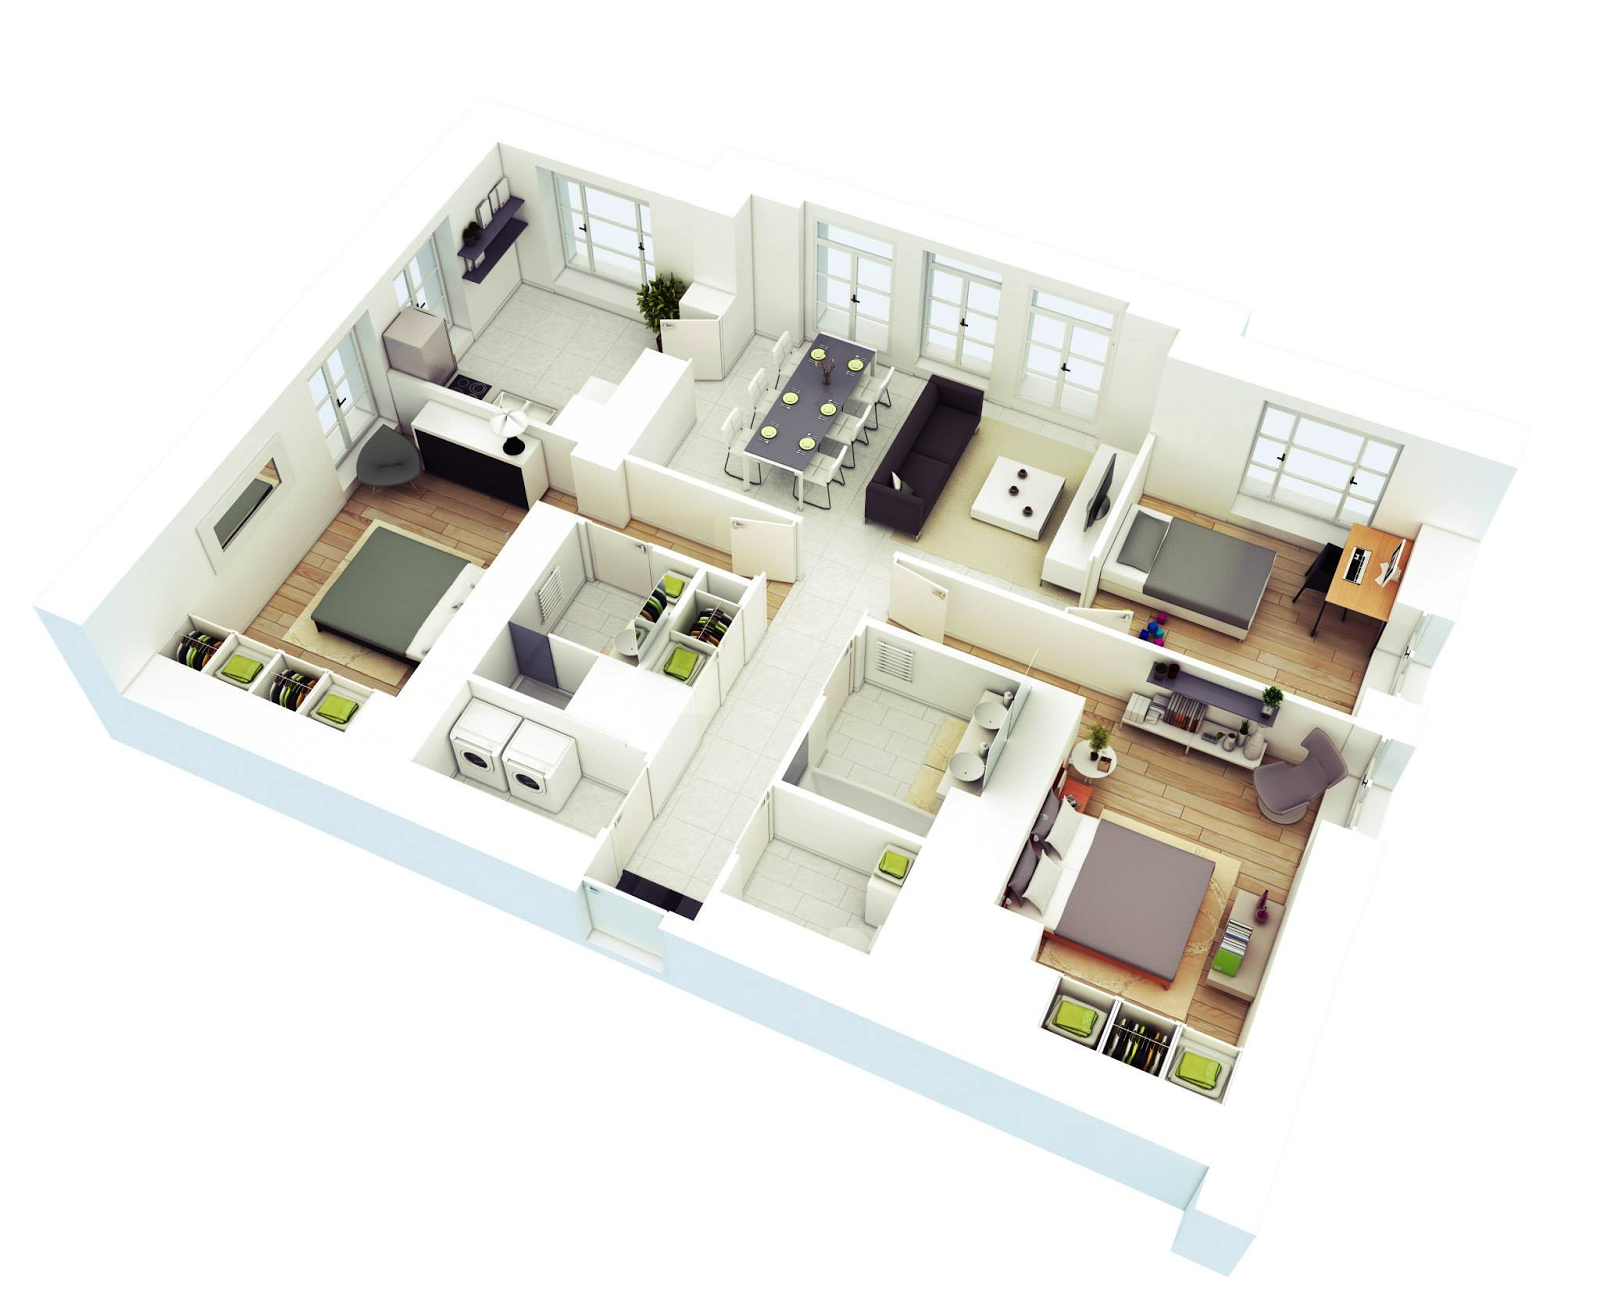 65 Desain Interior 3D Rumah Minimalis Terbaru 2017 Rumahku Unik